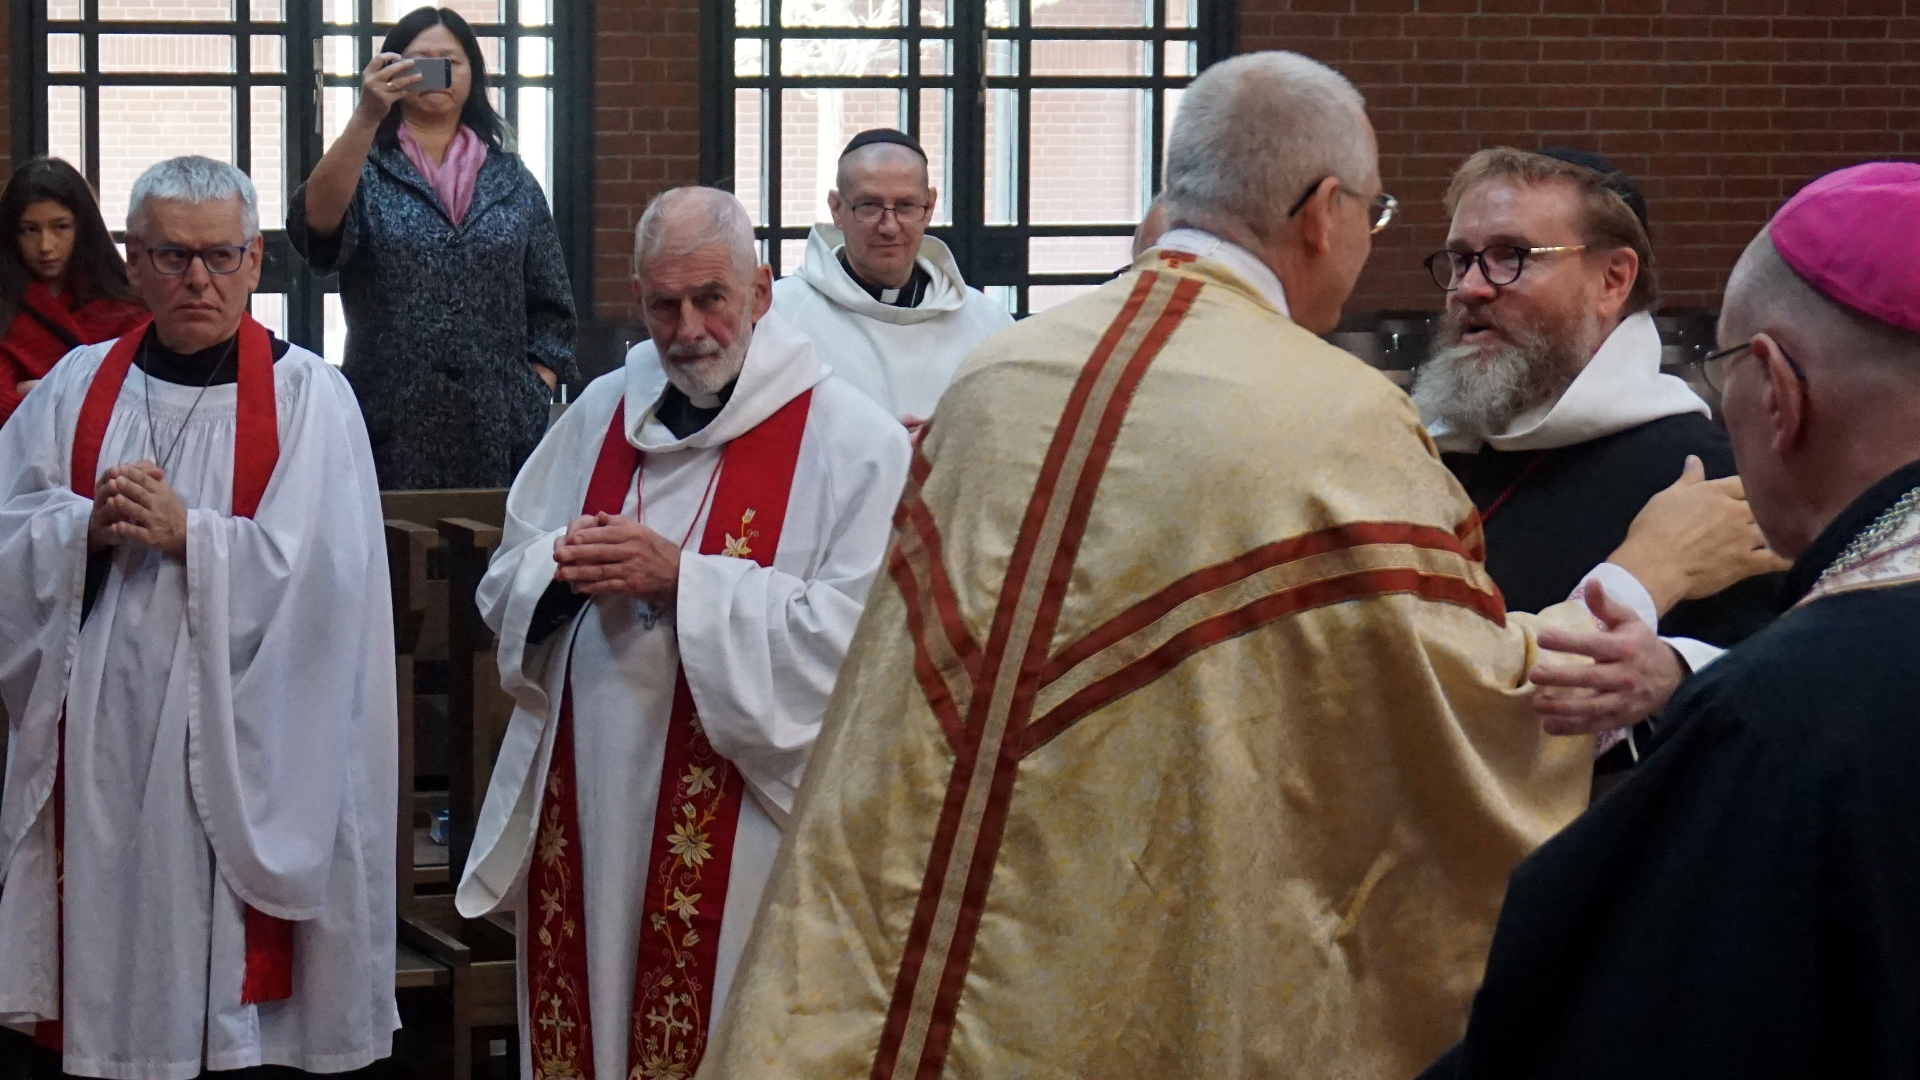 Friedensgruß durch Presbyterium Presbyterweihe Priesterweihe 2017 SJB Johannesbruderschaft